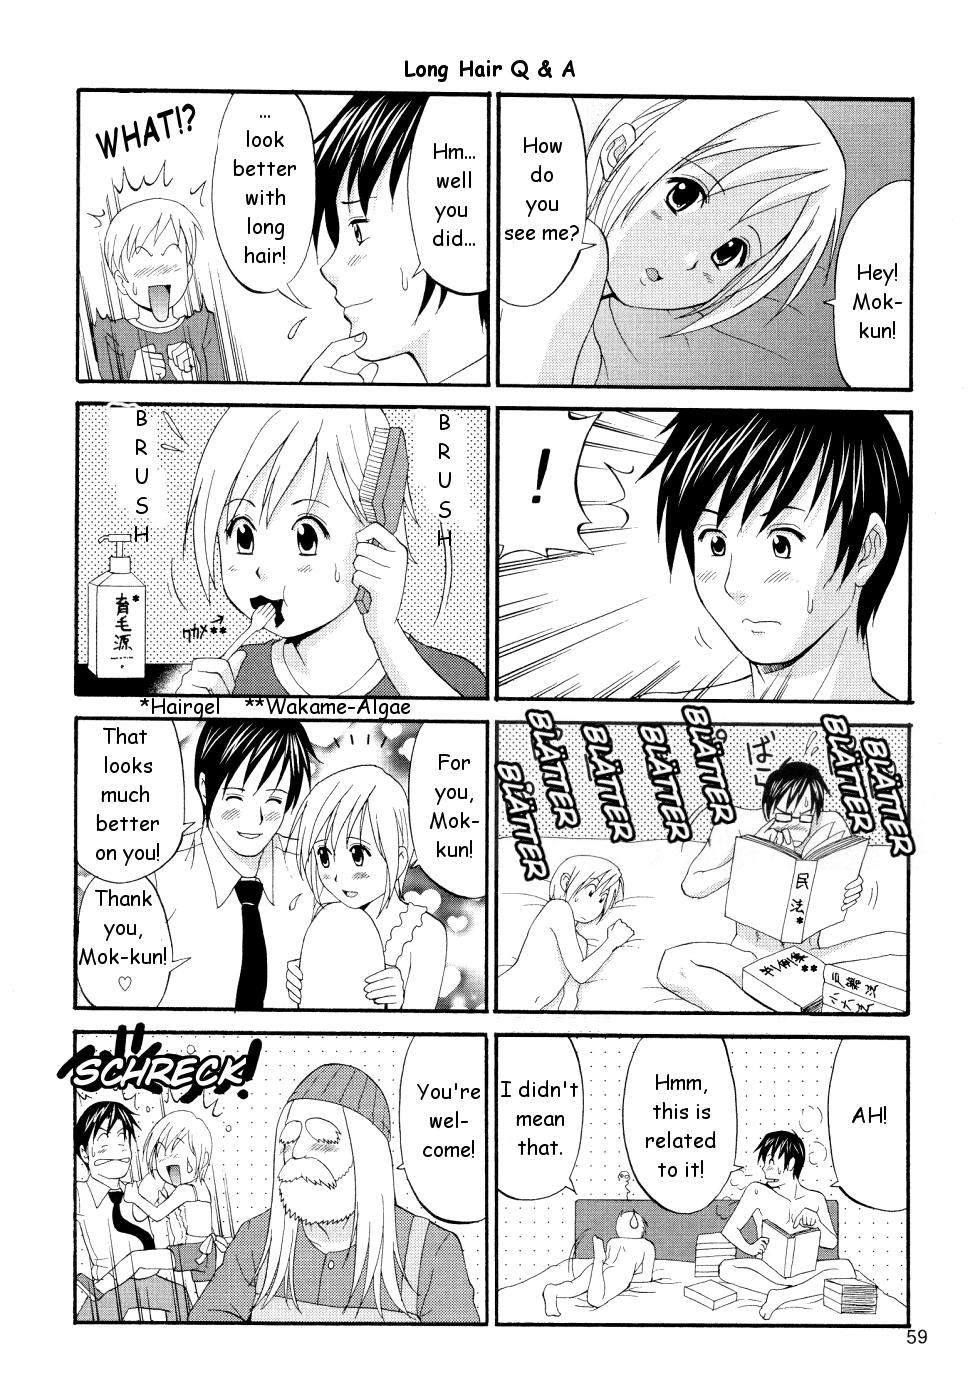 18 Year Old Boku no Pico Comic + Koushiki Character Genanshuu - Boku no pico Passivo - Page 59